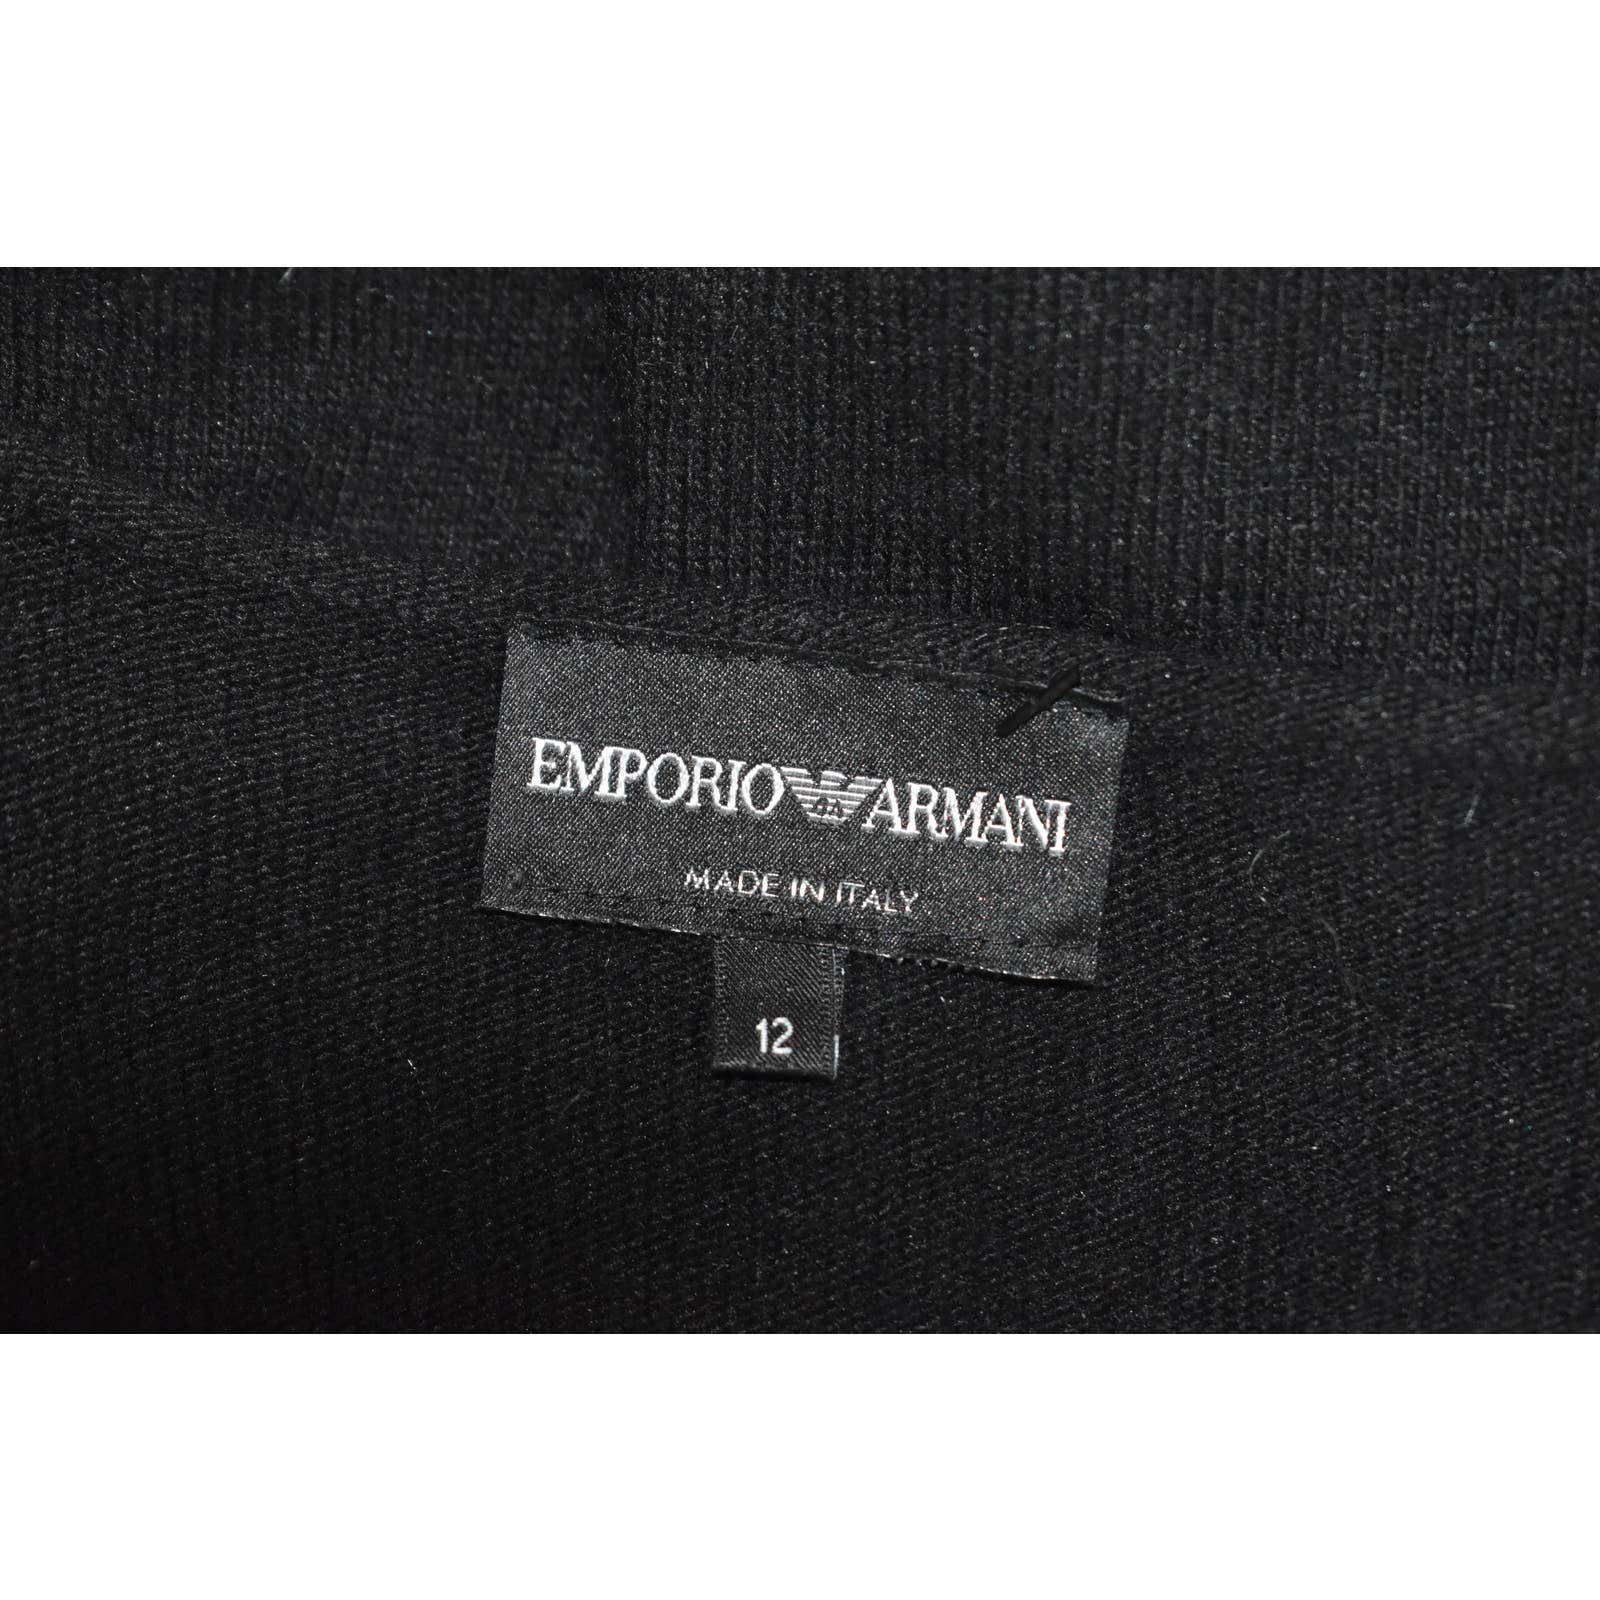 Emporio Armani Black Deanna Spa Angora Sweater - 12